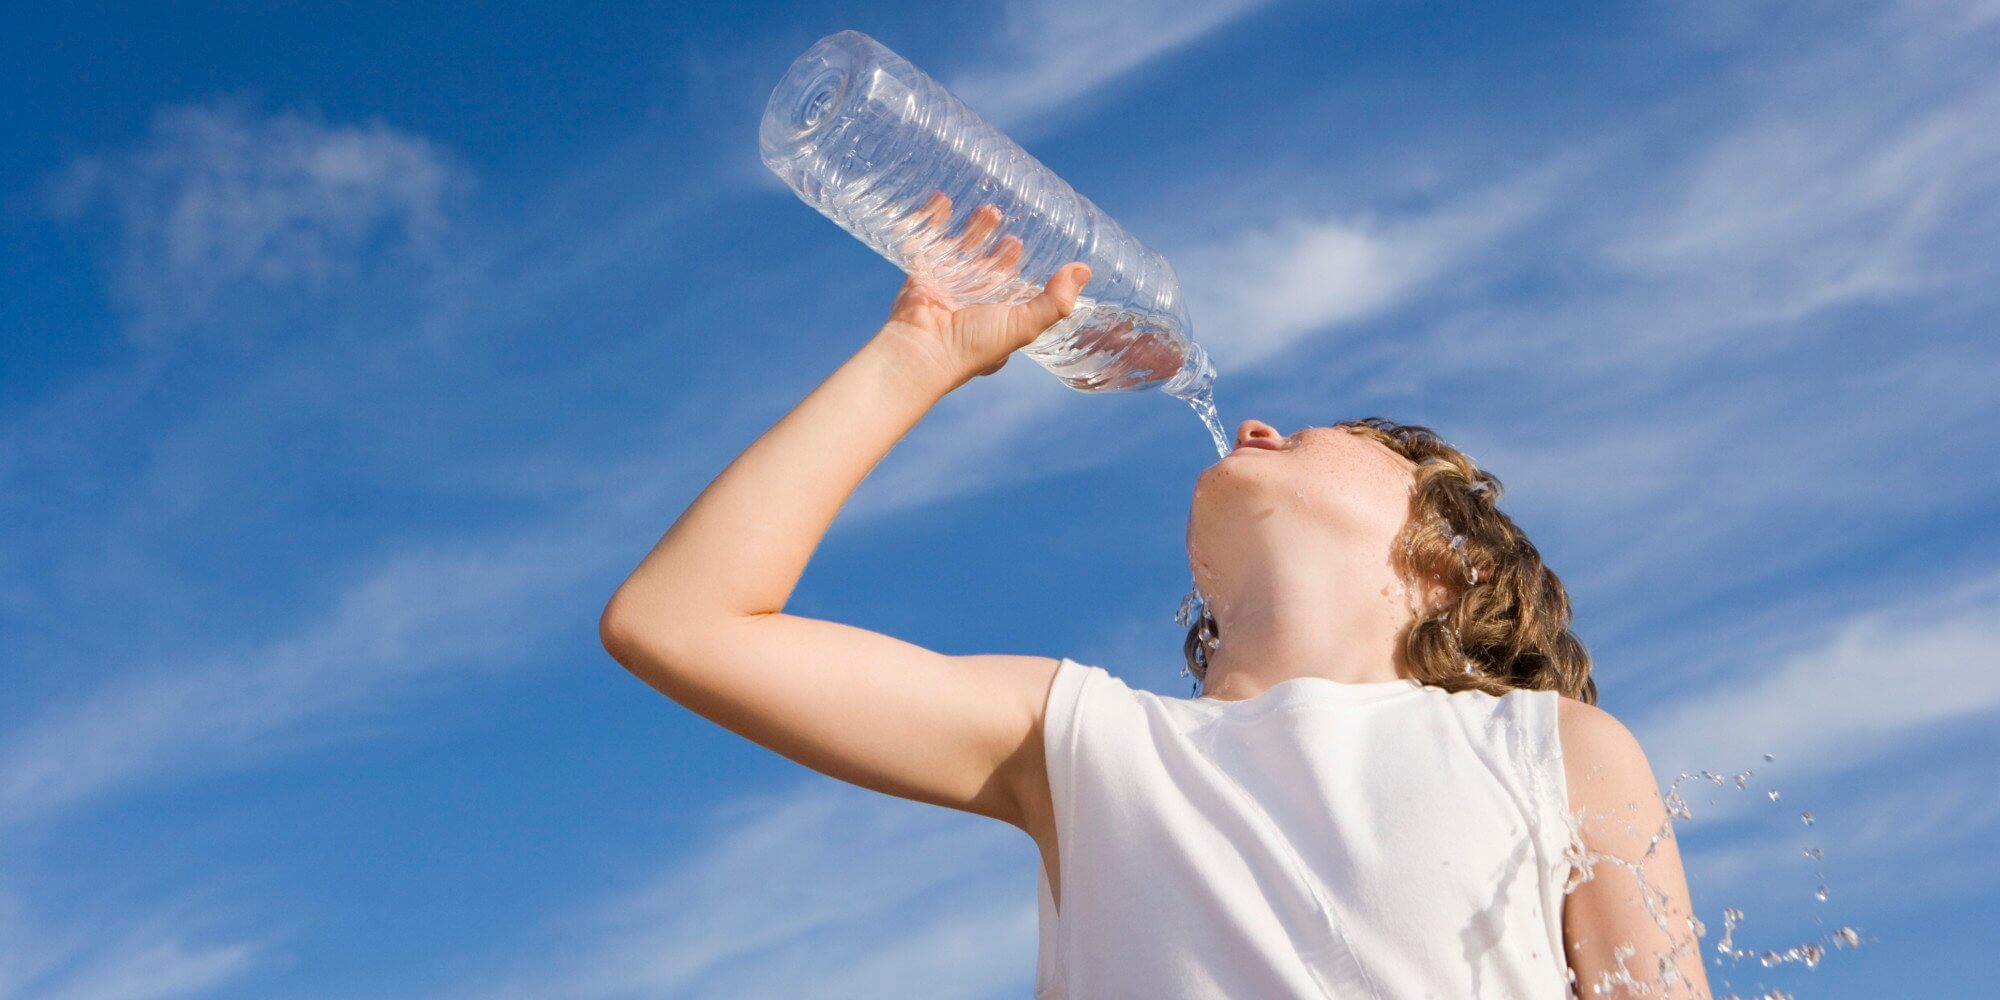 Сколько нужно пить воды в день подростку: литров, вес, стаканов, как